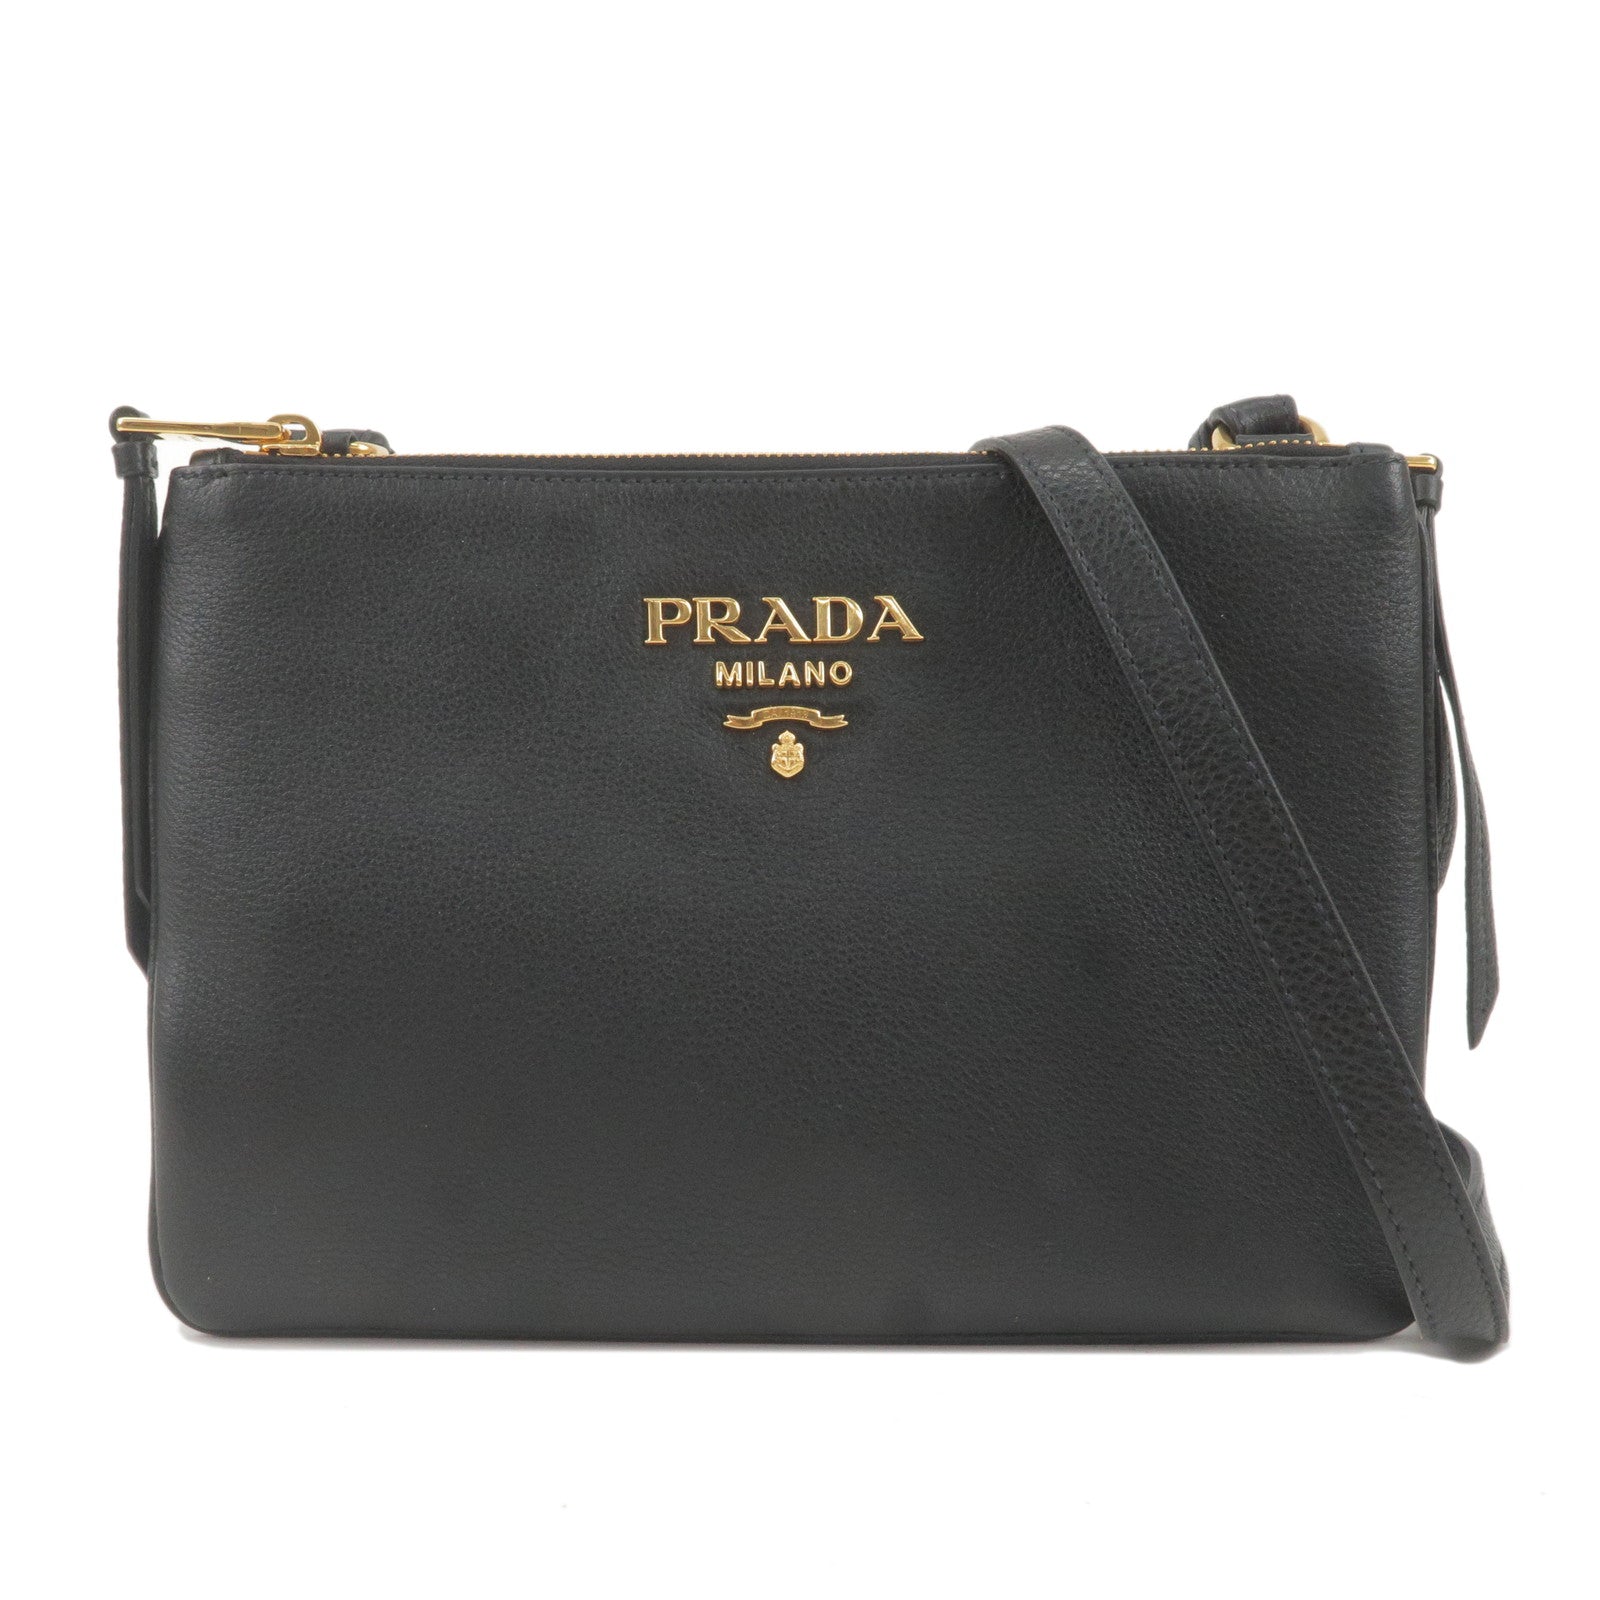 PRADA-Logo-Leather-Shoulder-Bag-Gold-Hardware-Black-1BH046